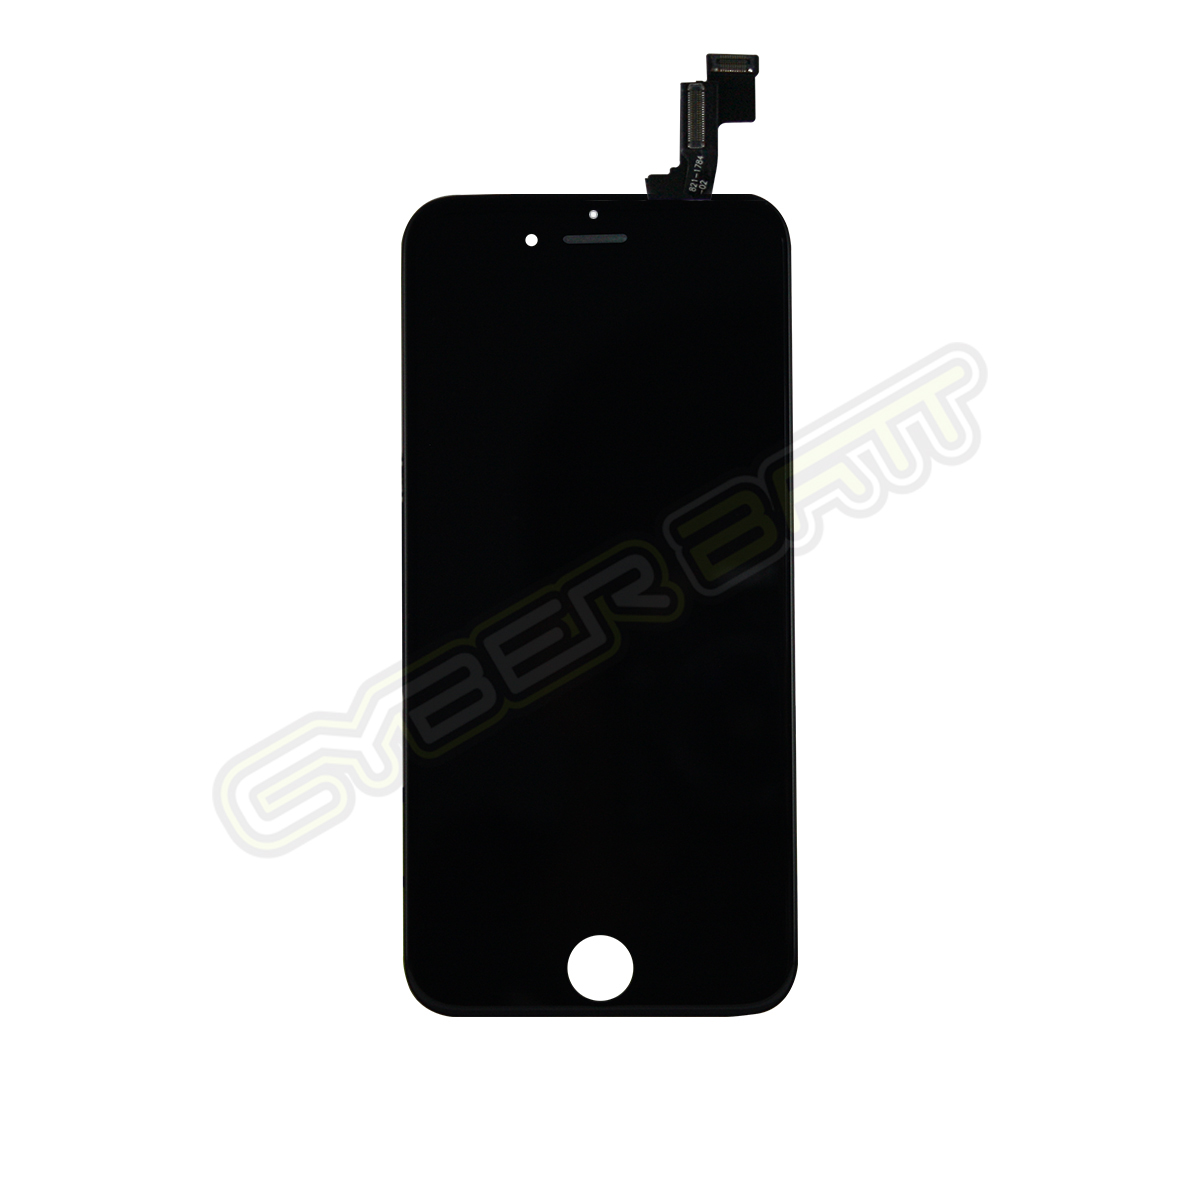 iPhone 5s LCD Black หน้าจอไอโฟน 5s สีดำ